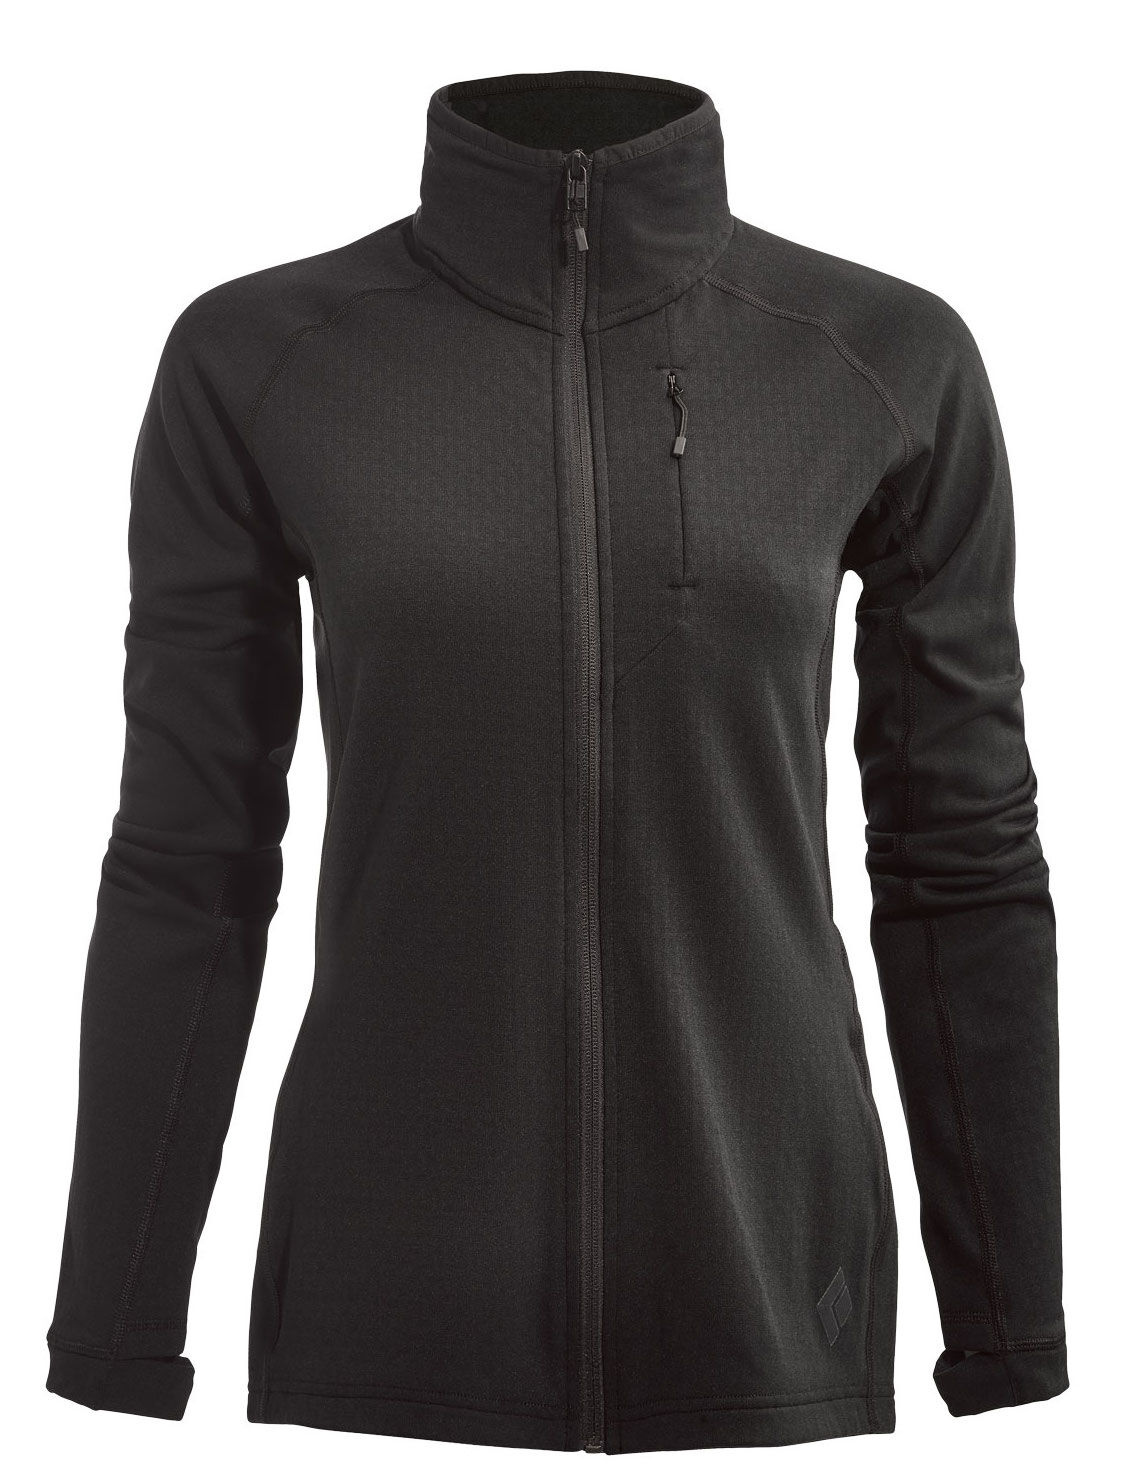 Black Diamond - Coefficient fleece Jacket - Fleece jacket - Women's